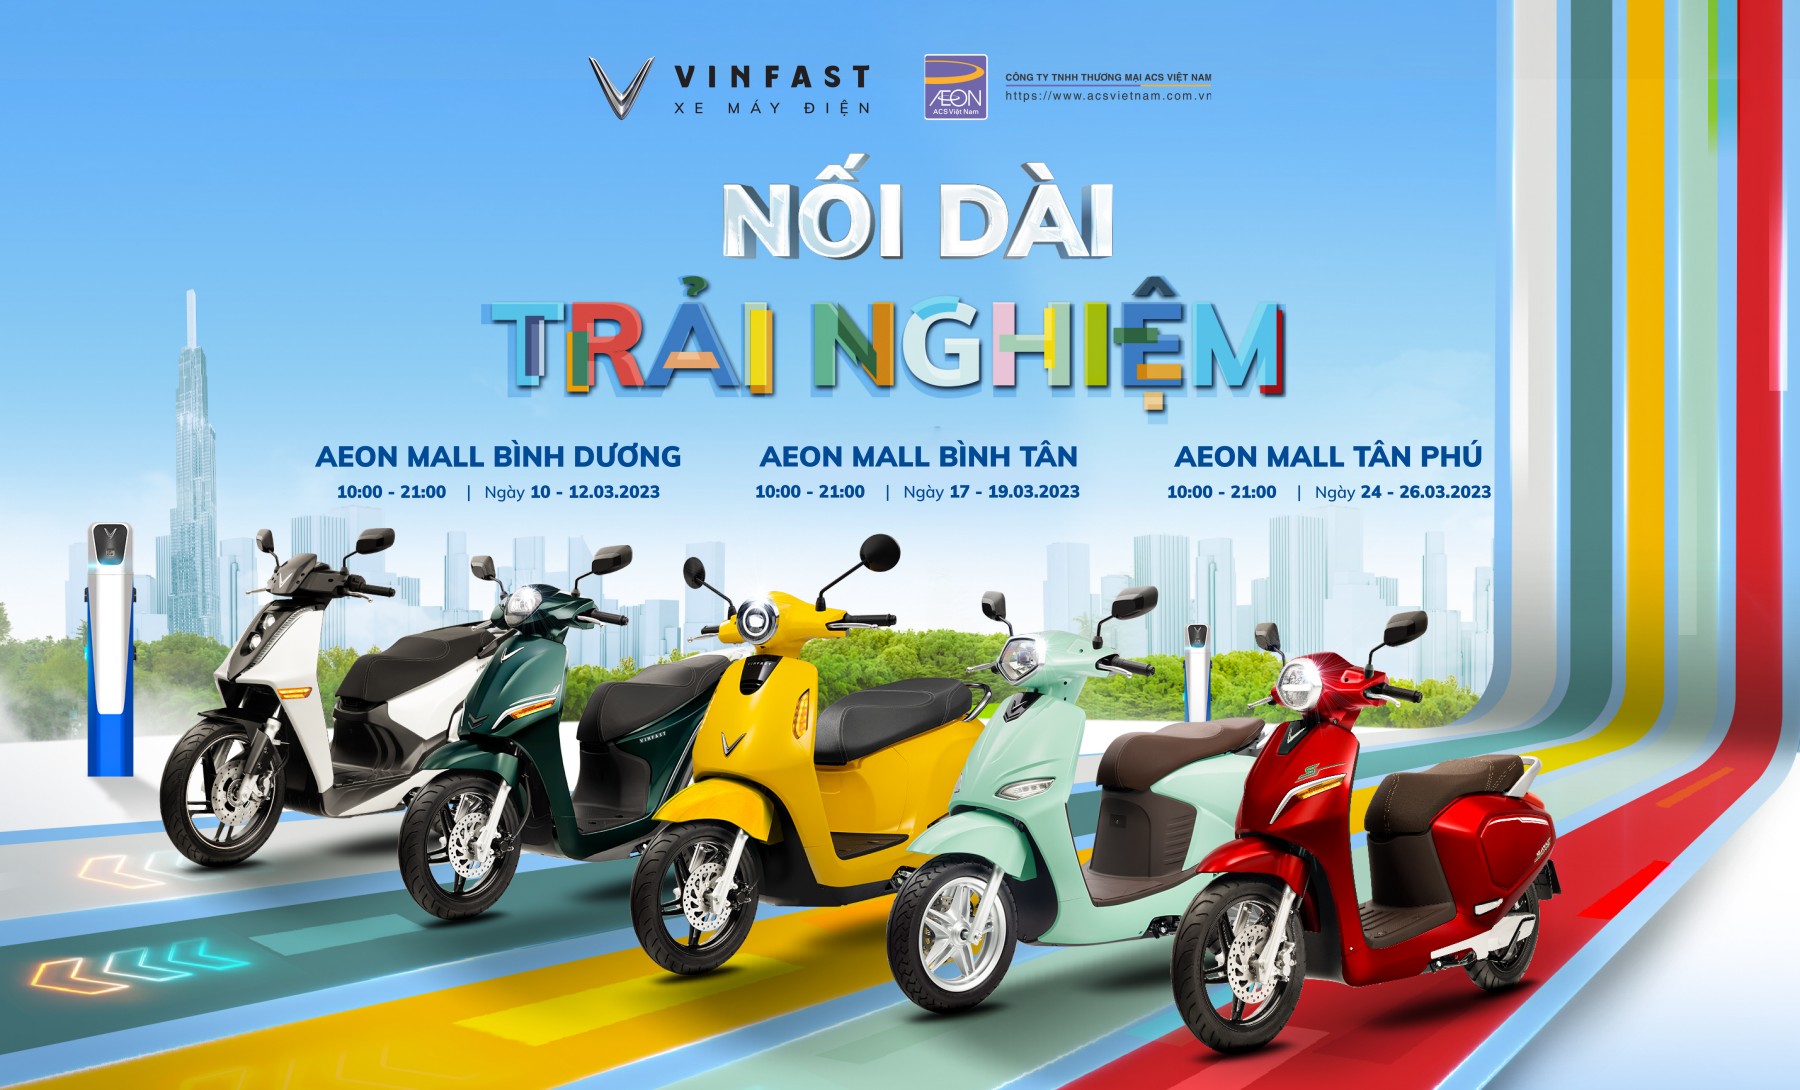 Cuối tuần “đi mall”, săn voucher mua xe máy điện VinFast - 1